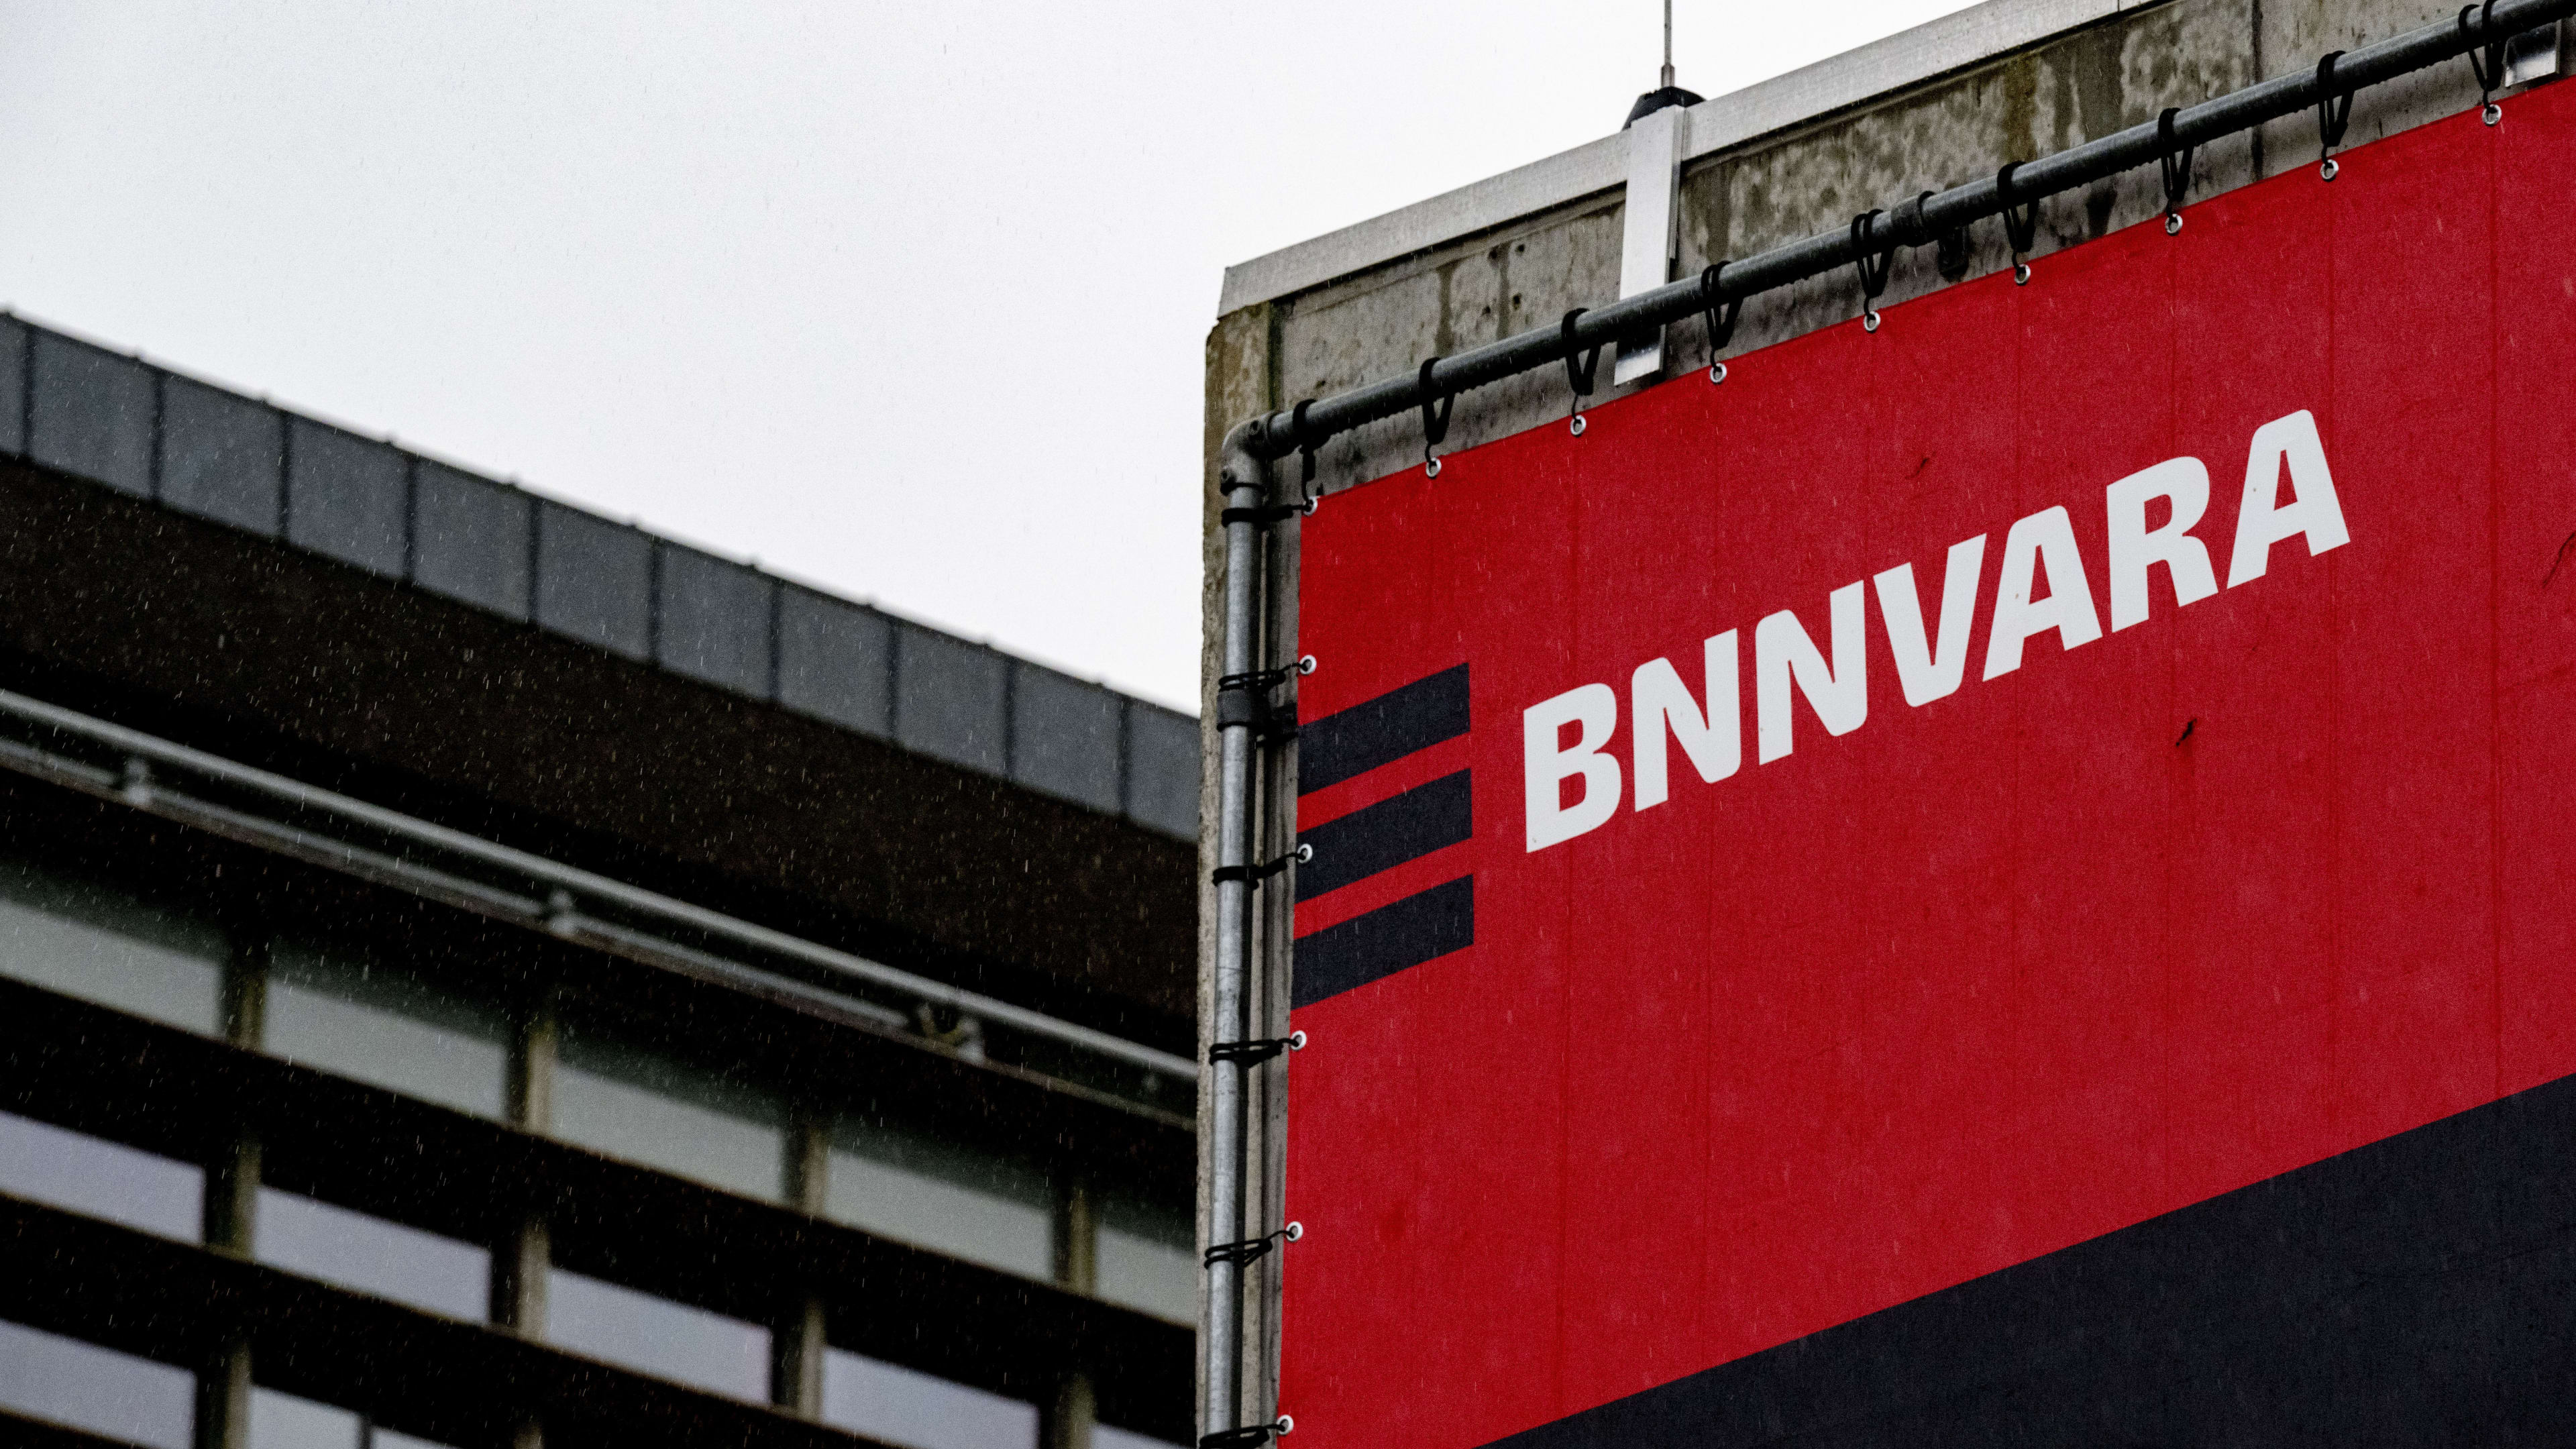 Directie BNNVARA uit zorgen om winst PVV in interne mail: 'Donkere ochtend'